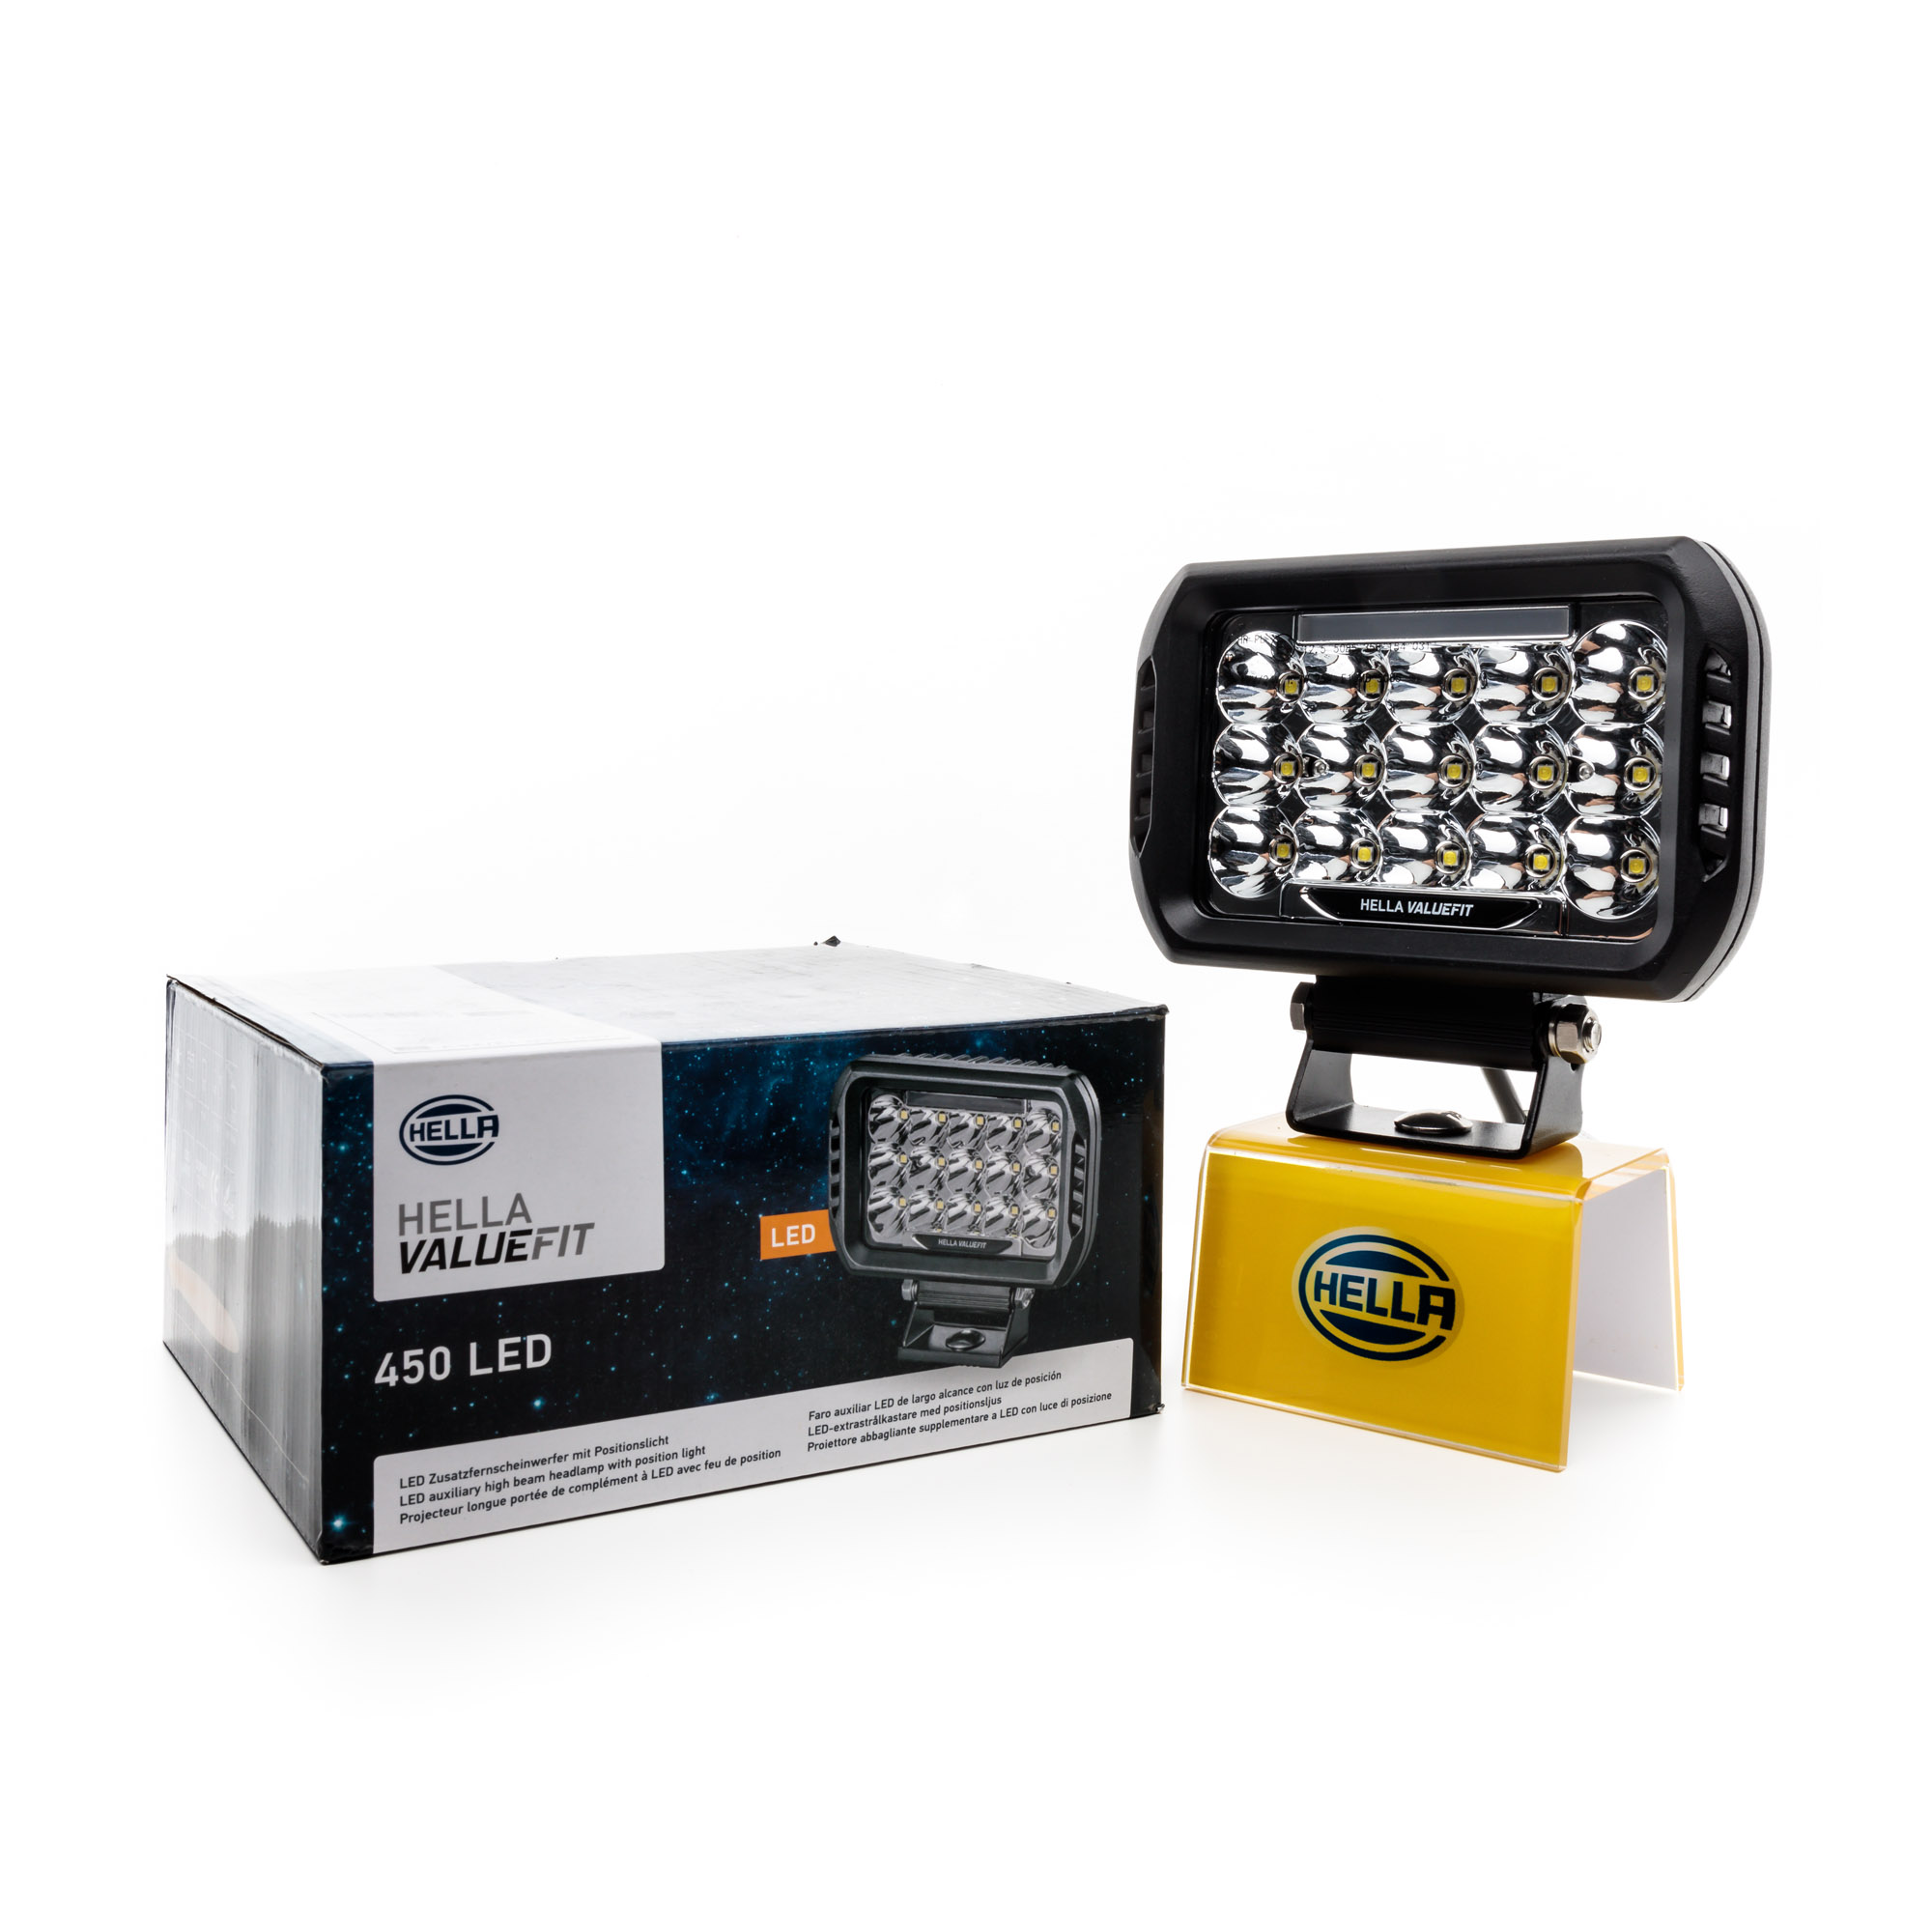 HELLA - LED-Fernscheinwerfer - Valuefit 450 - ECE-R112/ECE-R10/E9  16538/ECE-R7/E1 5085 - 1FE 358 154-031 : : Auto & Motorrad